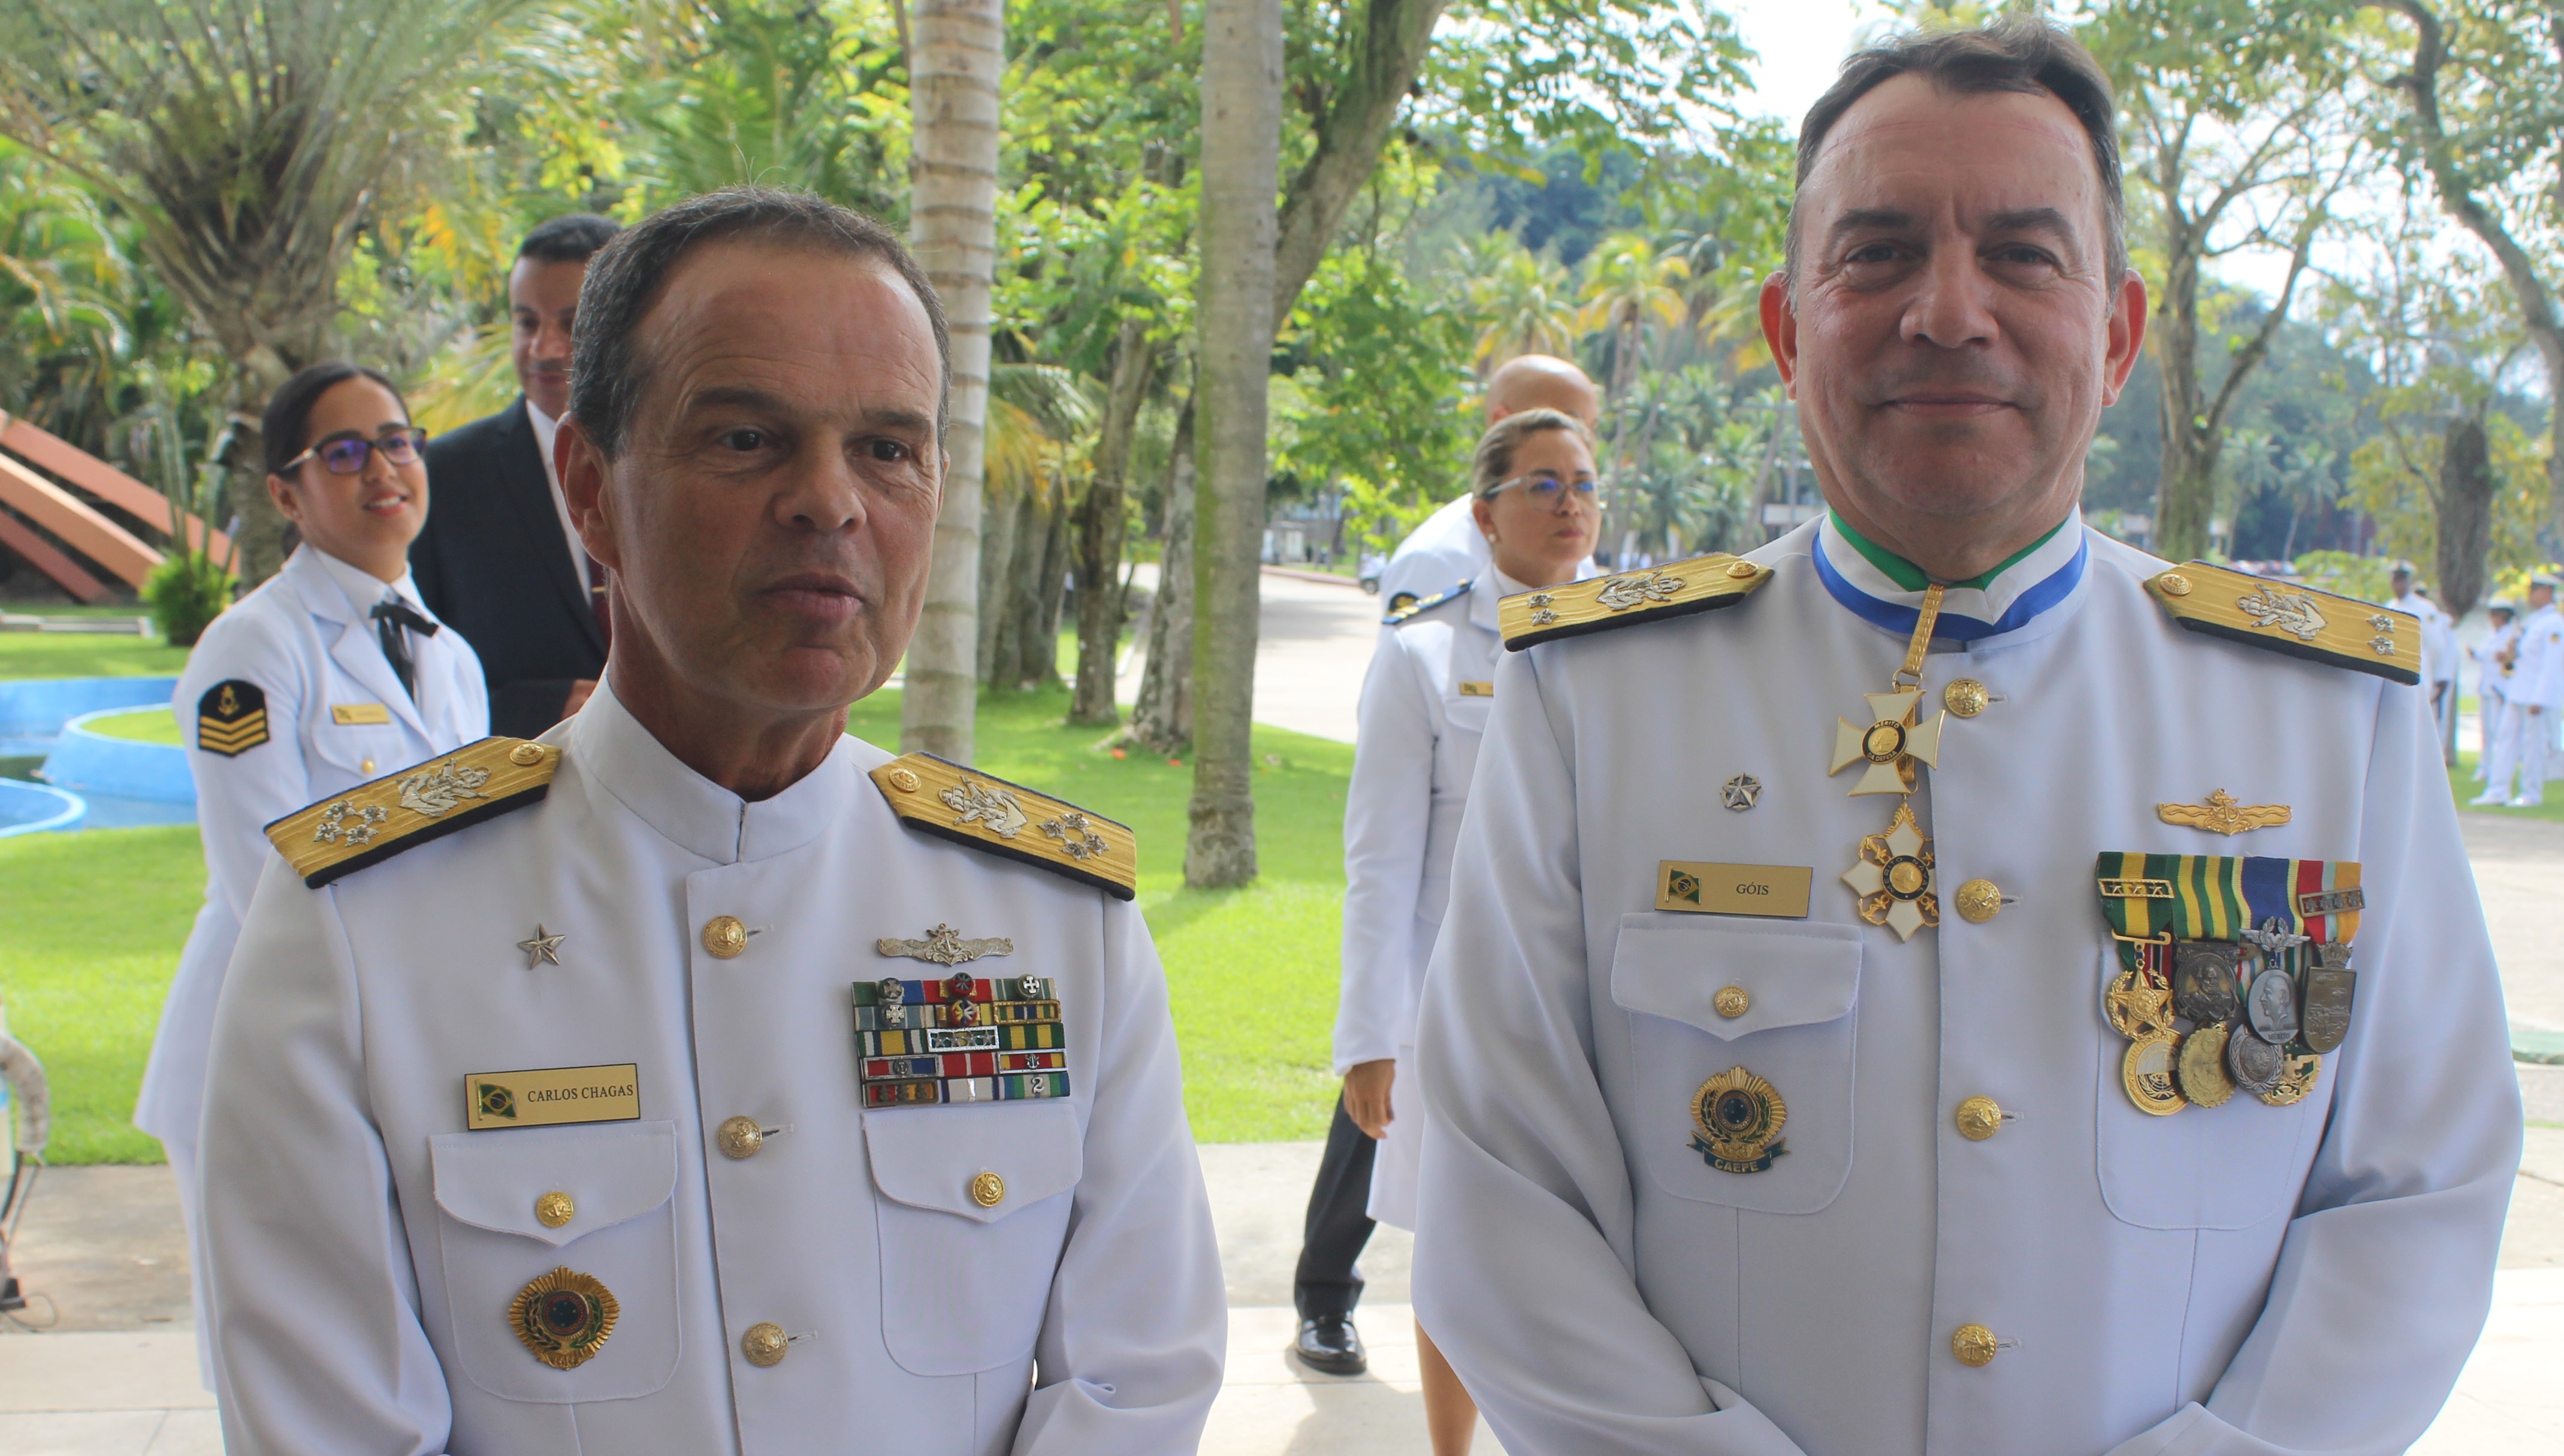 Ao lado do Almirante de Esquadra (FN) Carlos Chagas, o novo comandante reforçou seu compromisso em manter os padrões de excelência